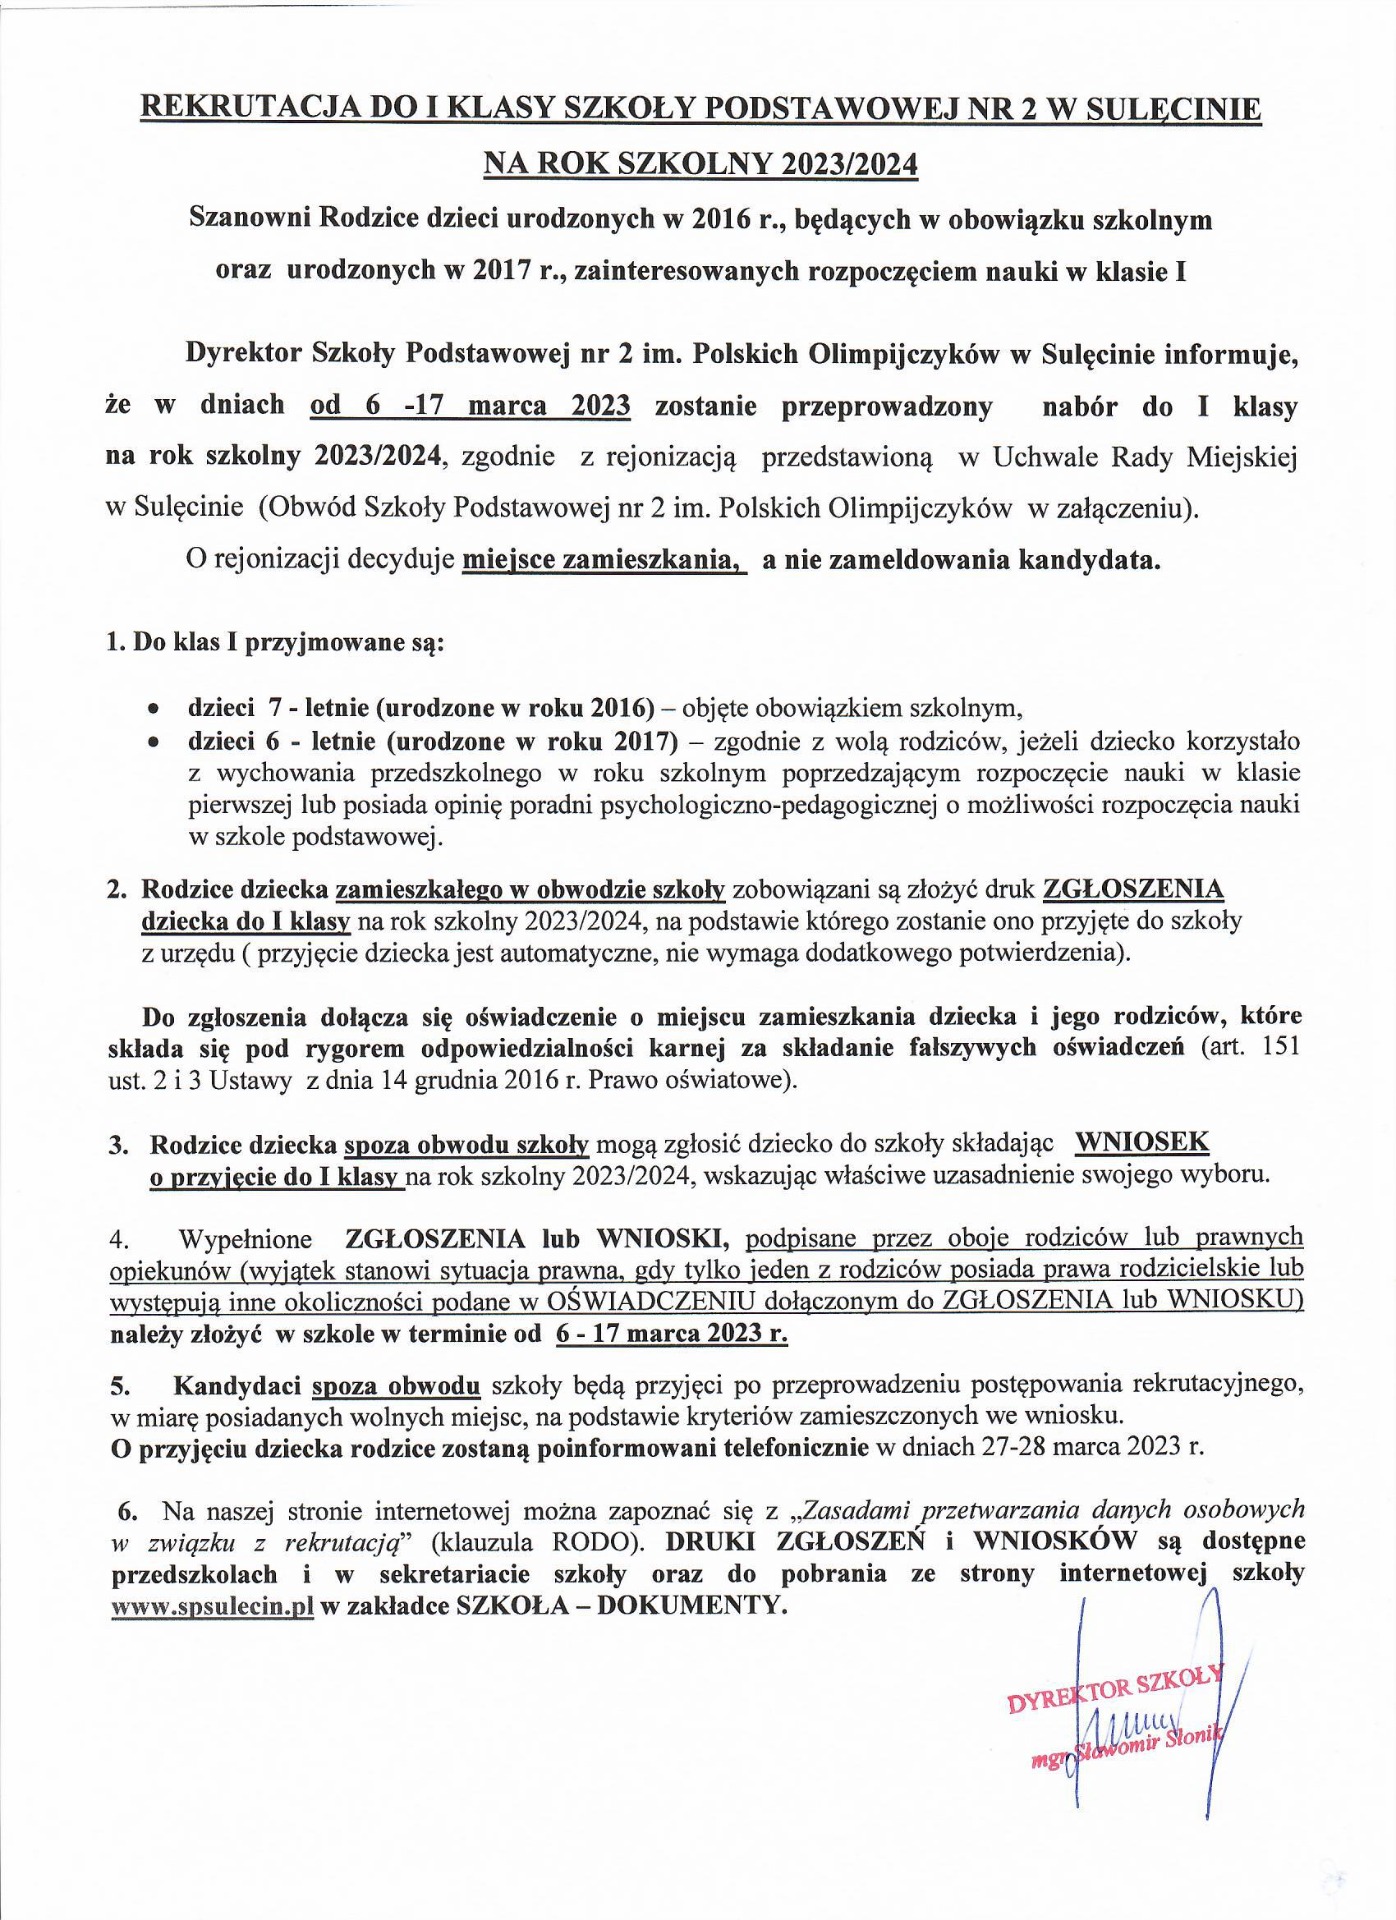 Rekrutacja do I klasy Szkoły Podstawowej nr 2 w Sulęcinie na rok szkolny 2023/2024 - Obrazek 1